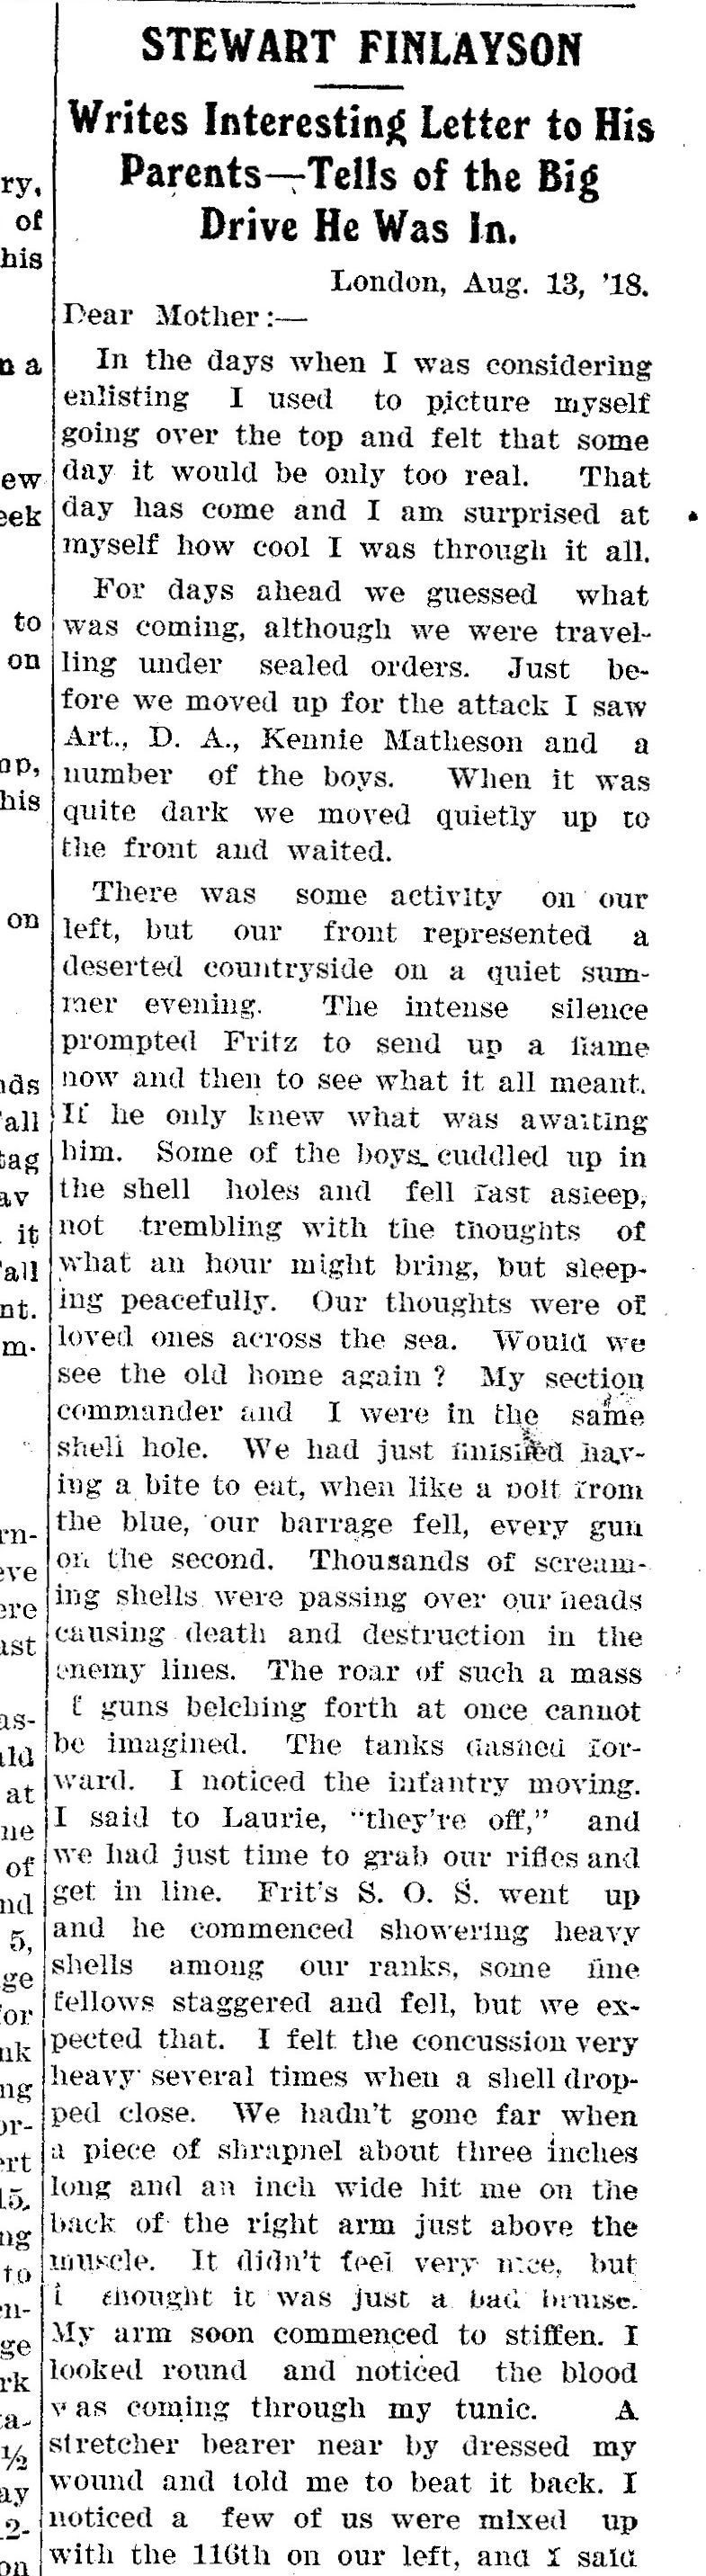 Kincardine Reporter, September 12, 1918 (1 of 3)